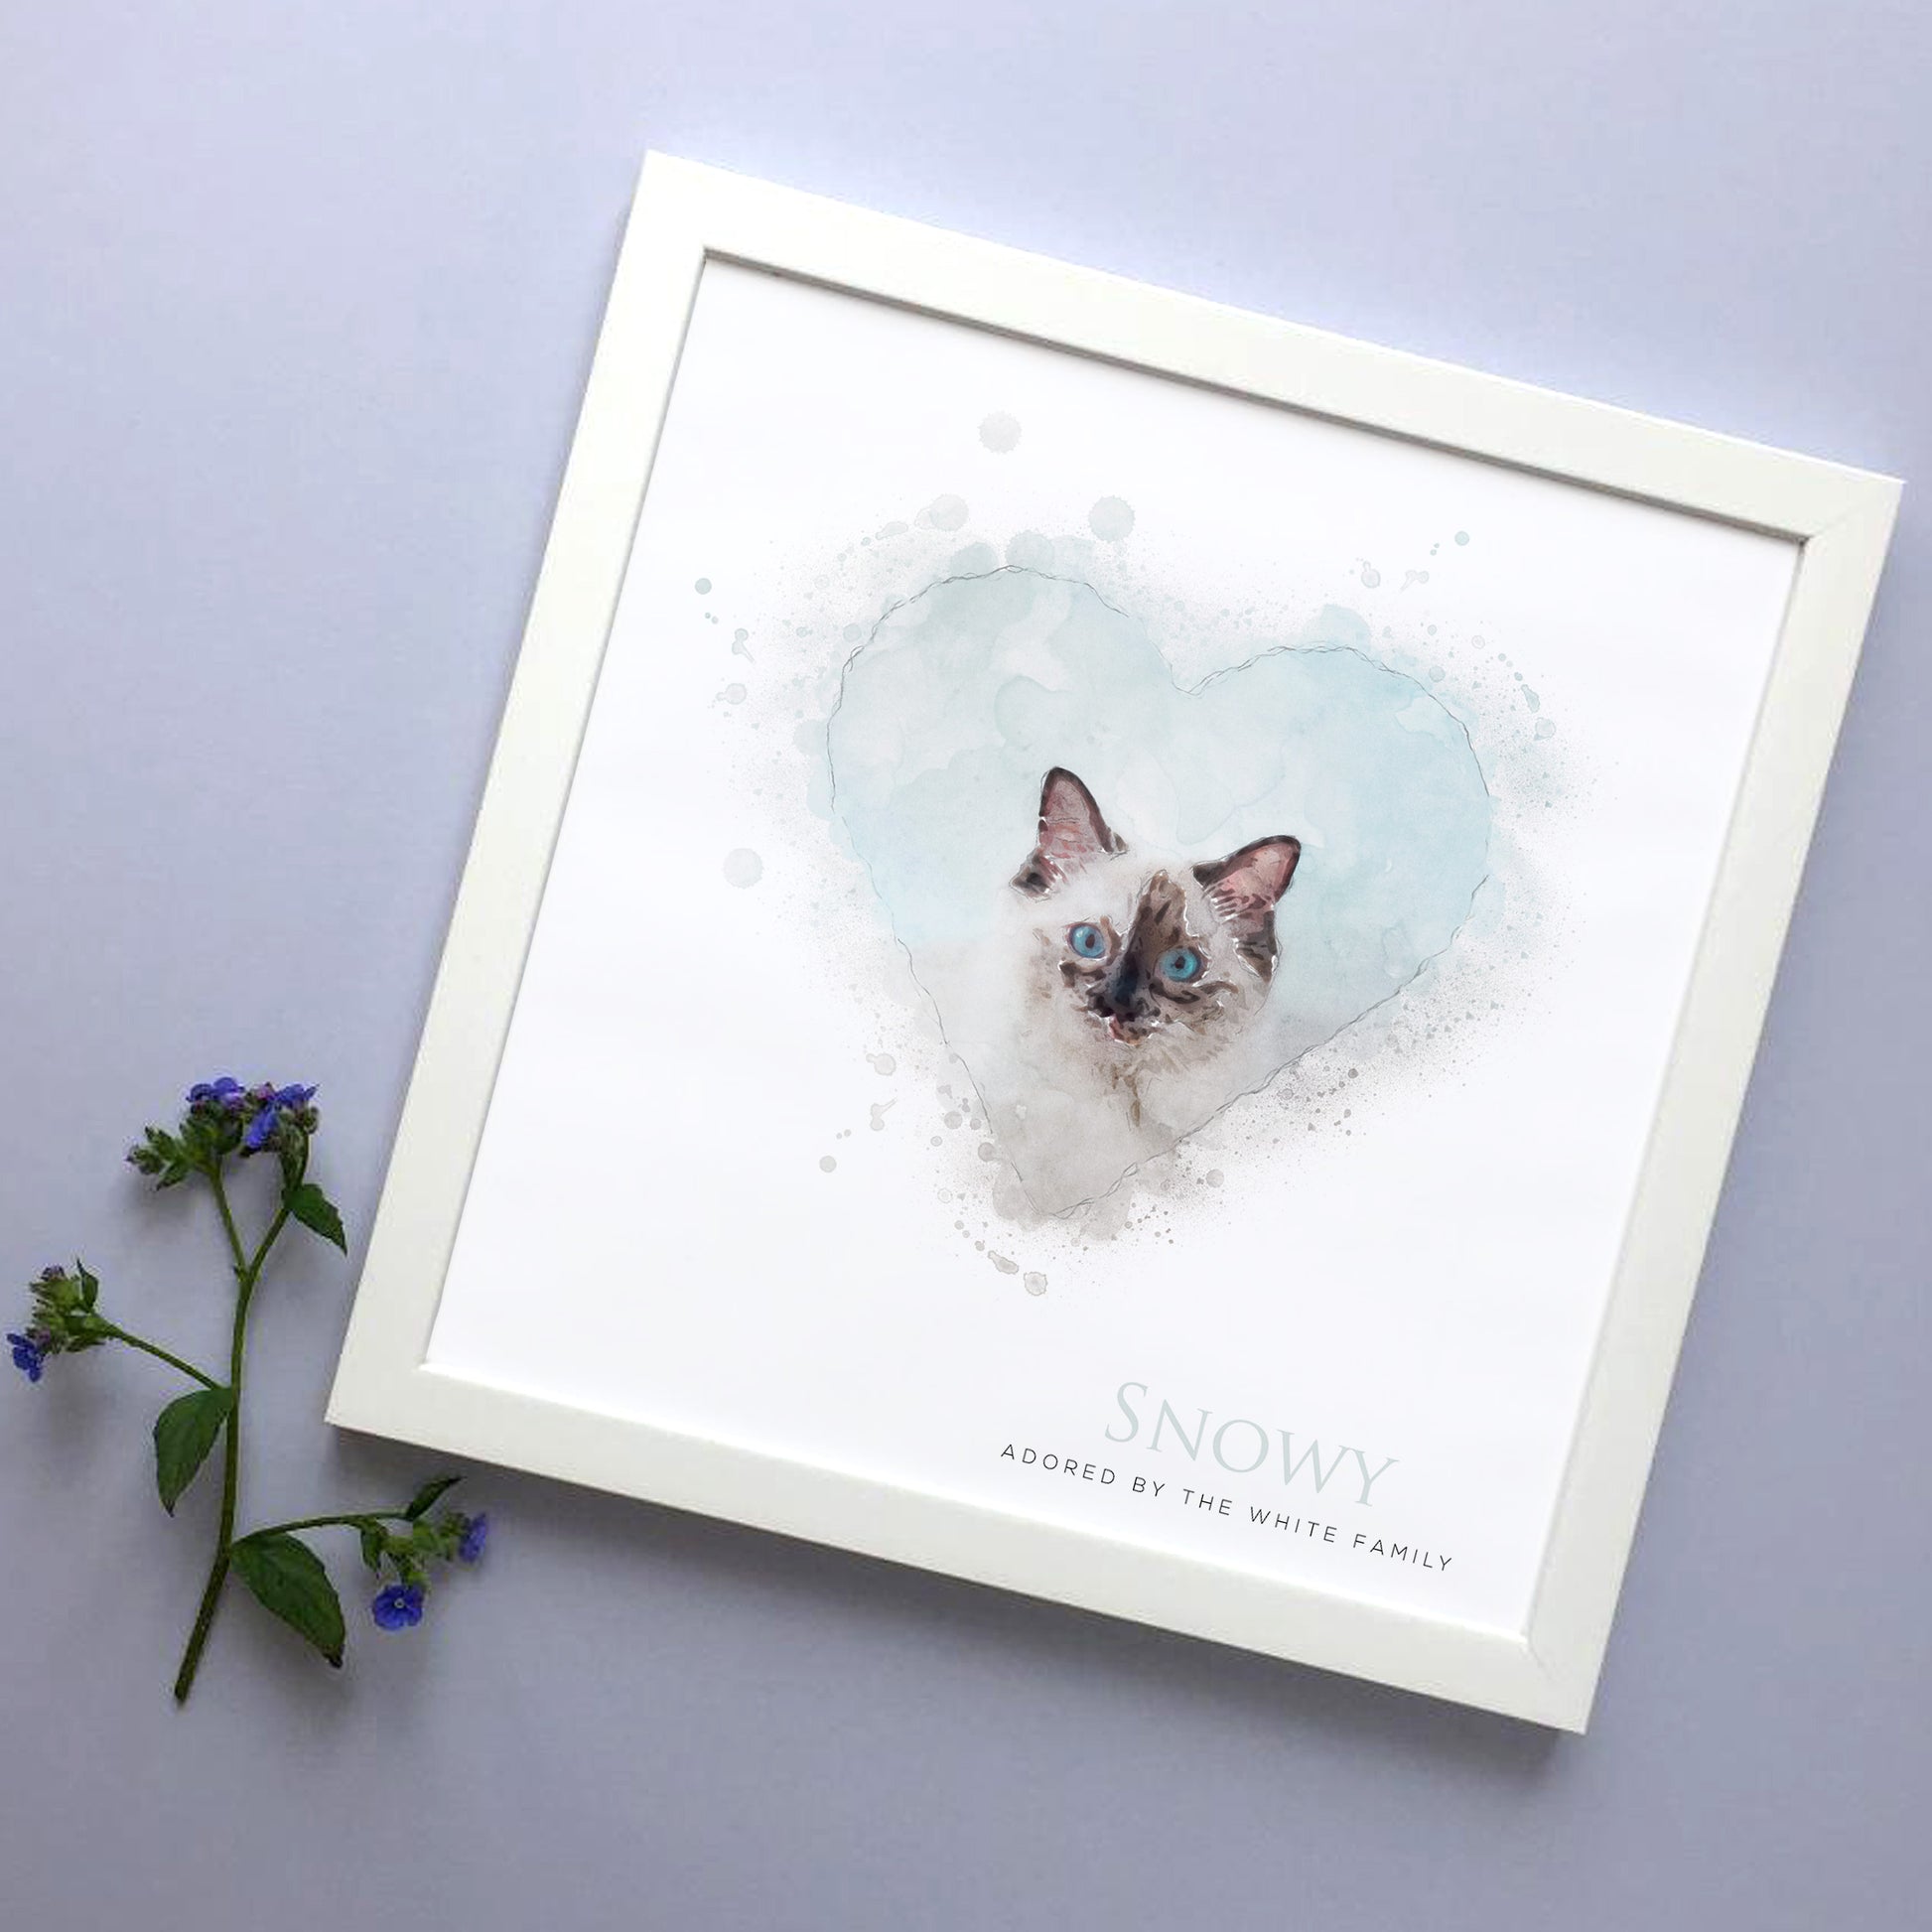 cat in soft watercolour illustration, framed in white wooden frame